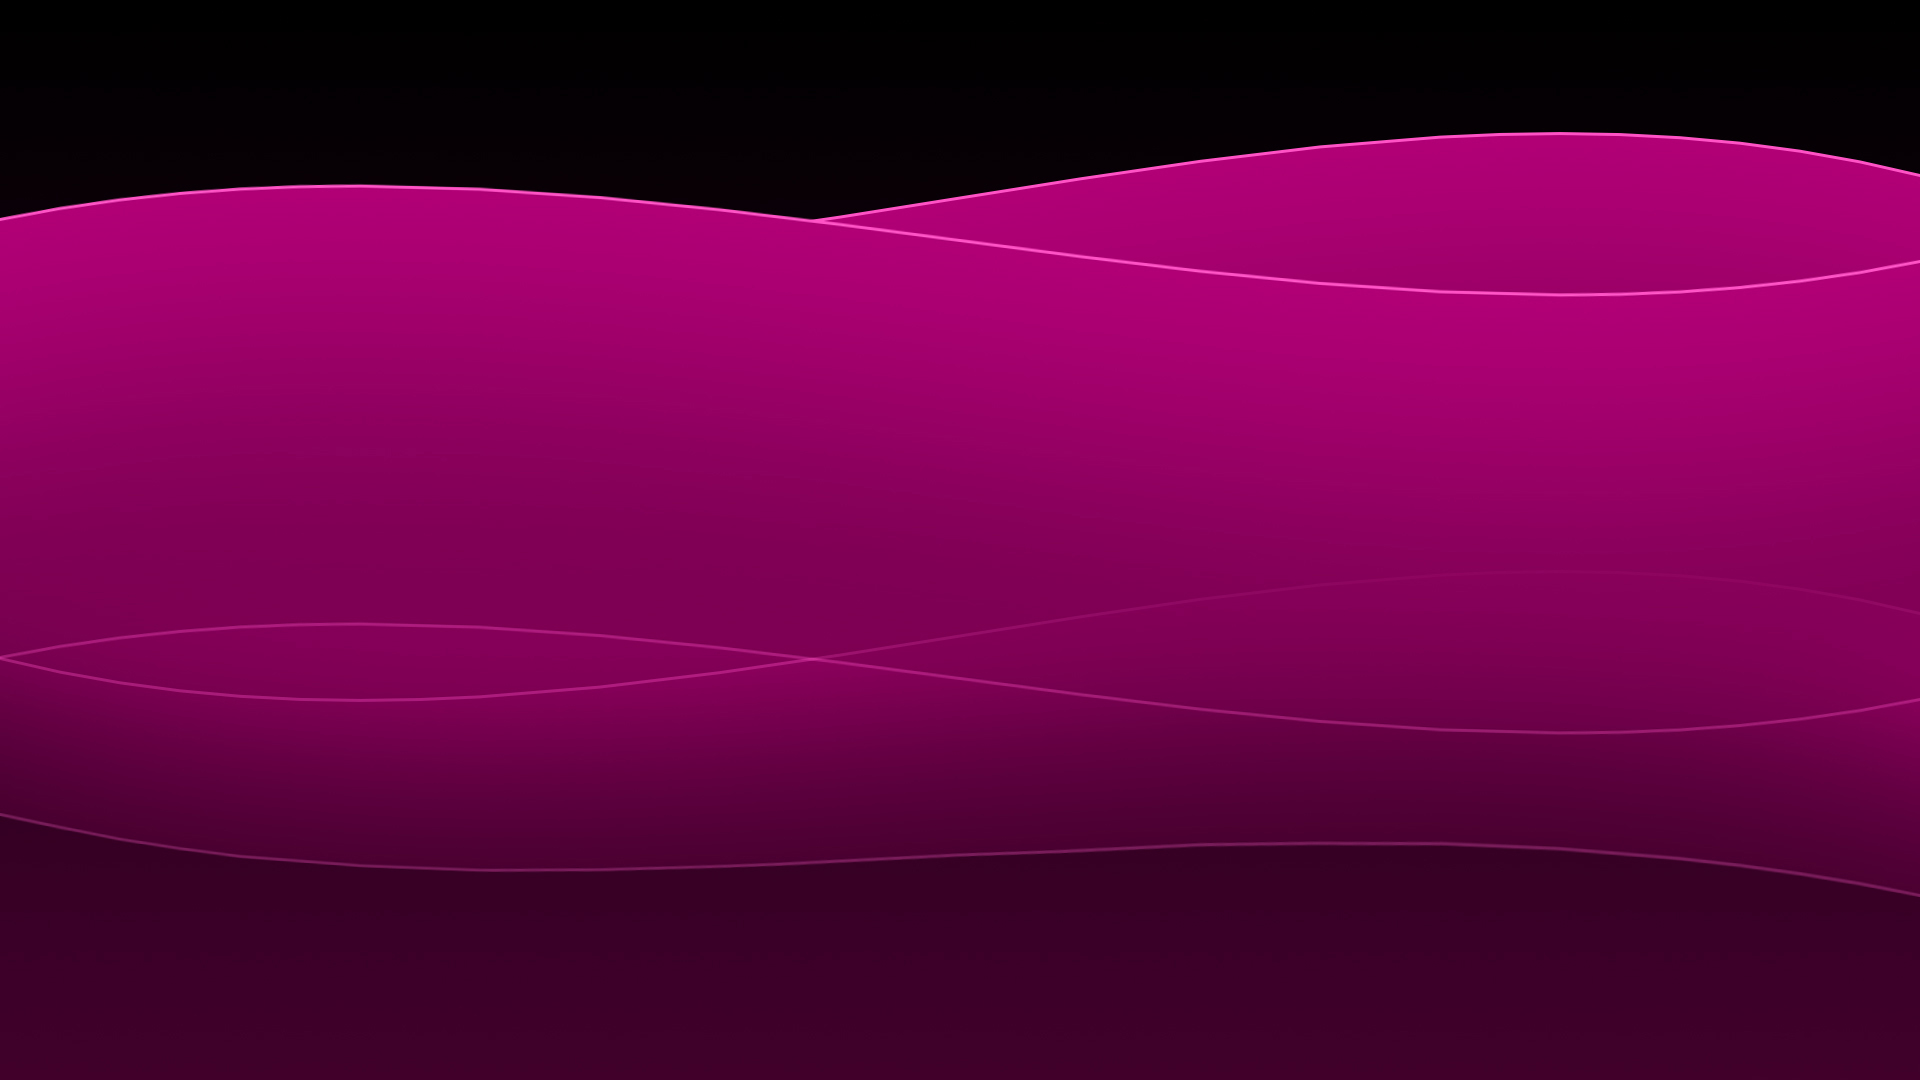  Dark  Pink  Wallpapers  HD  PixelsTalk Net